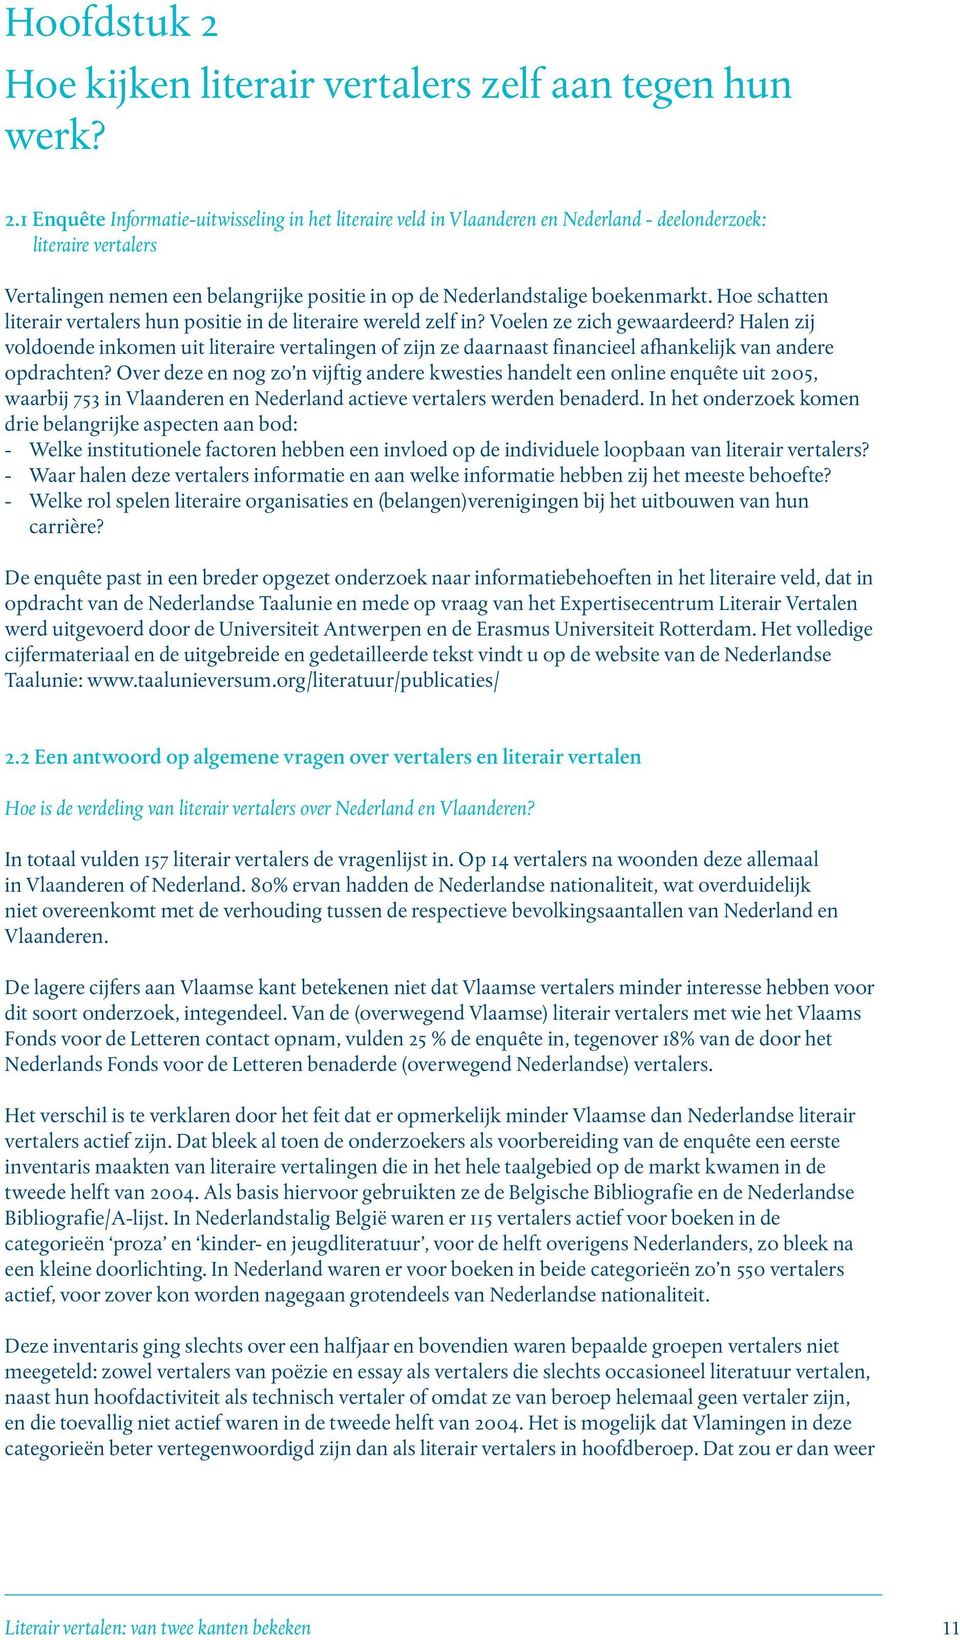 1 Enquête Informatie-uitwisseling in het literaire veld in Vlaanderen en Nederland - deelonderzoek: literaire vertalers Vertalingen nemen een belangrijke positie in op de Nederlandstalige boekenmarkt.